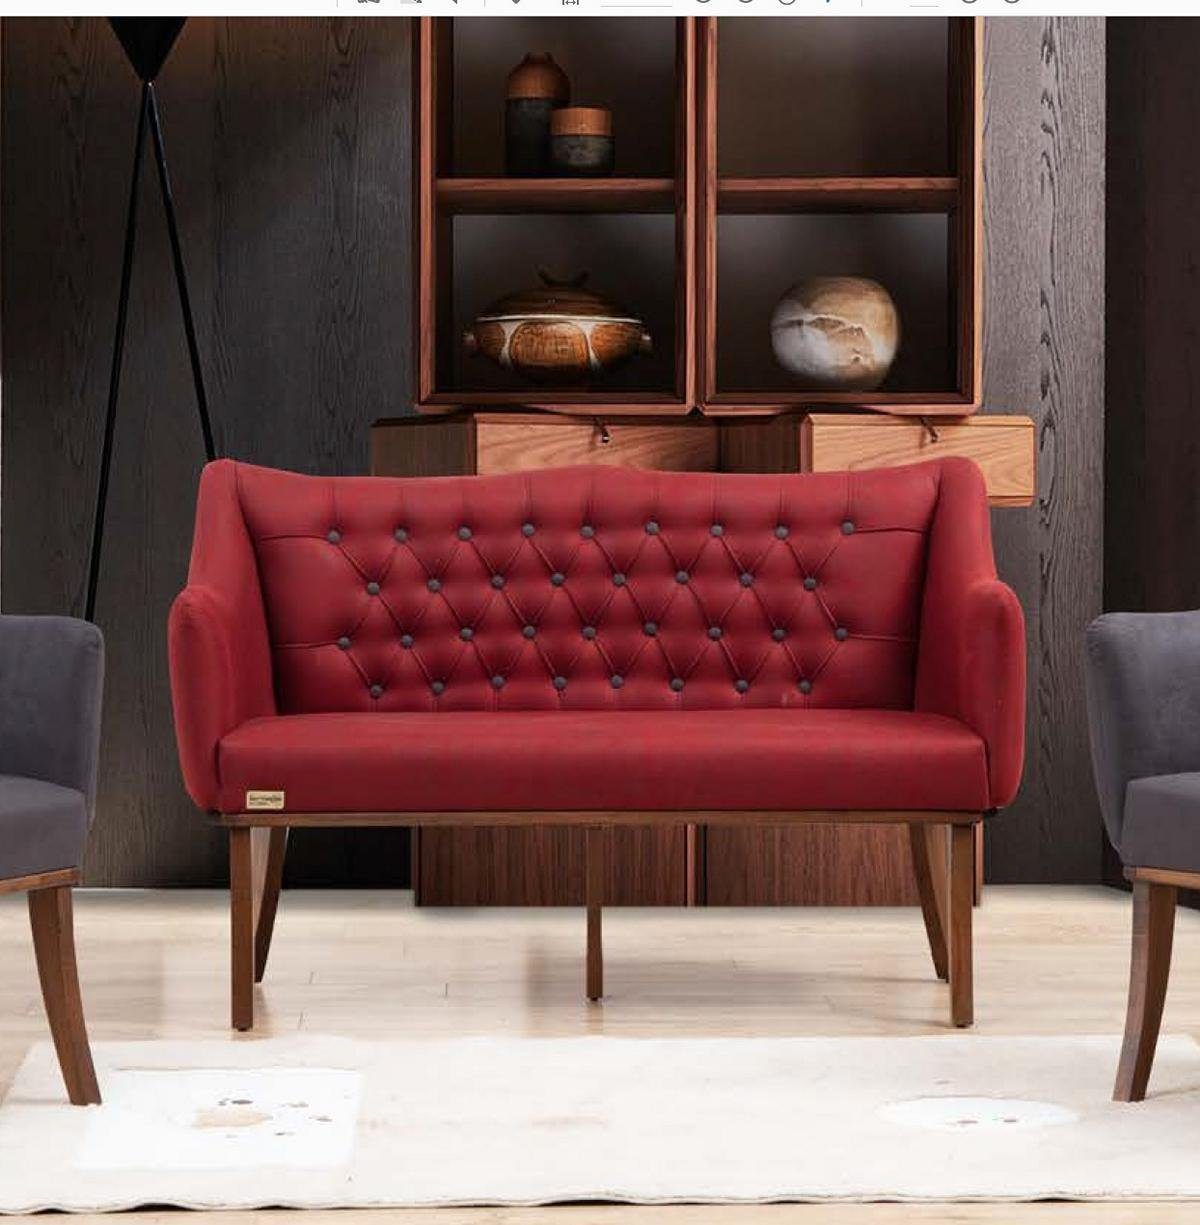 JVmoebel Bank Küchen Sitzbank Chesterfield Klassische Möbel Couch Zweisitzer Rot | Sitzbänke